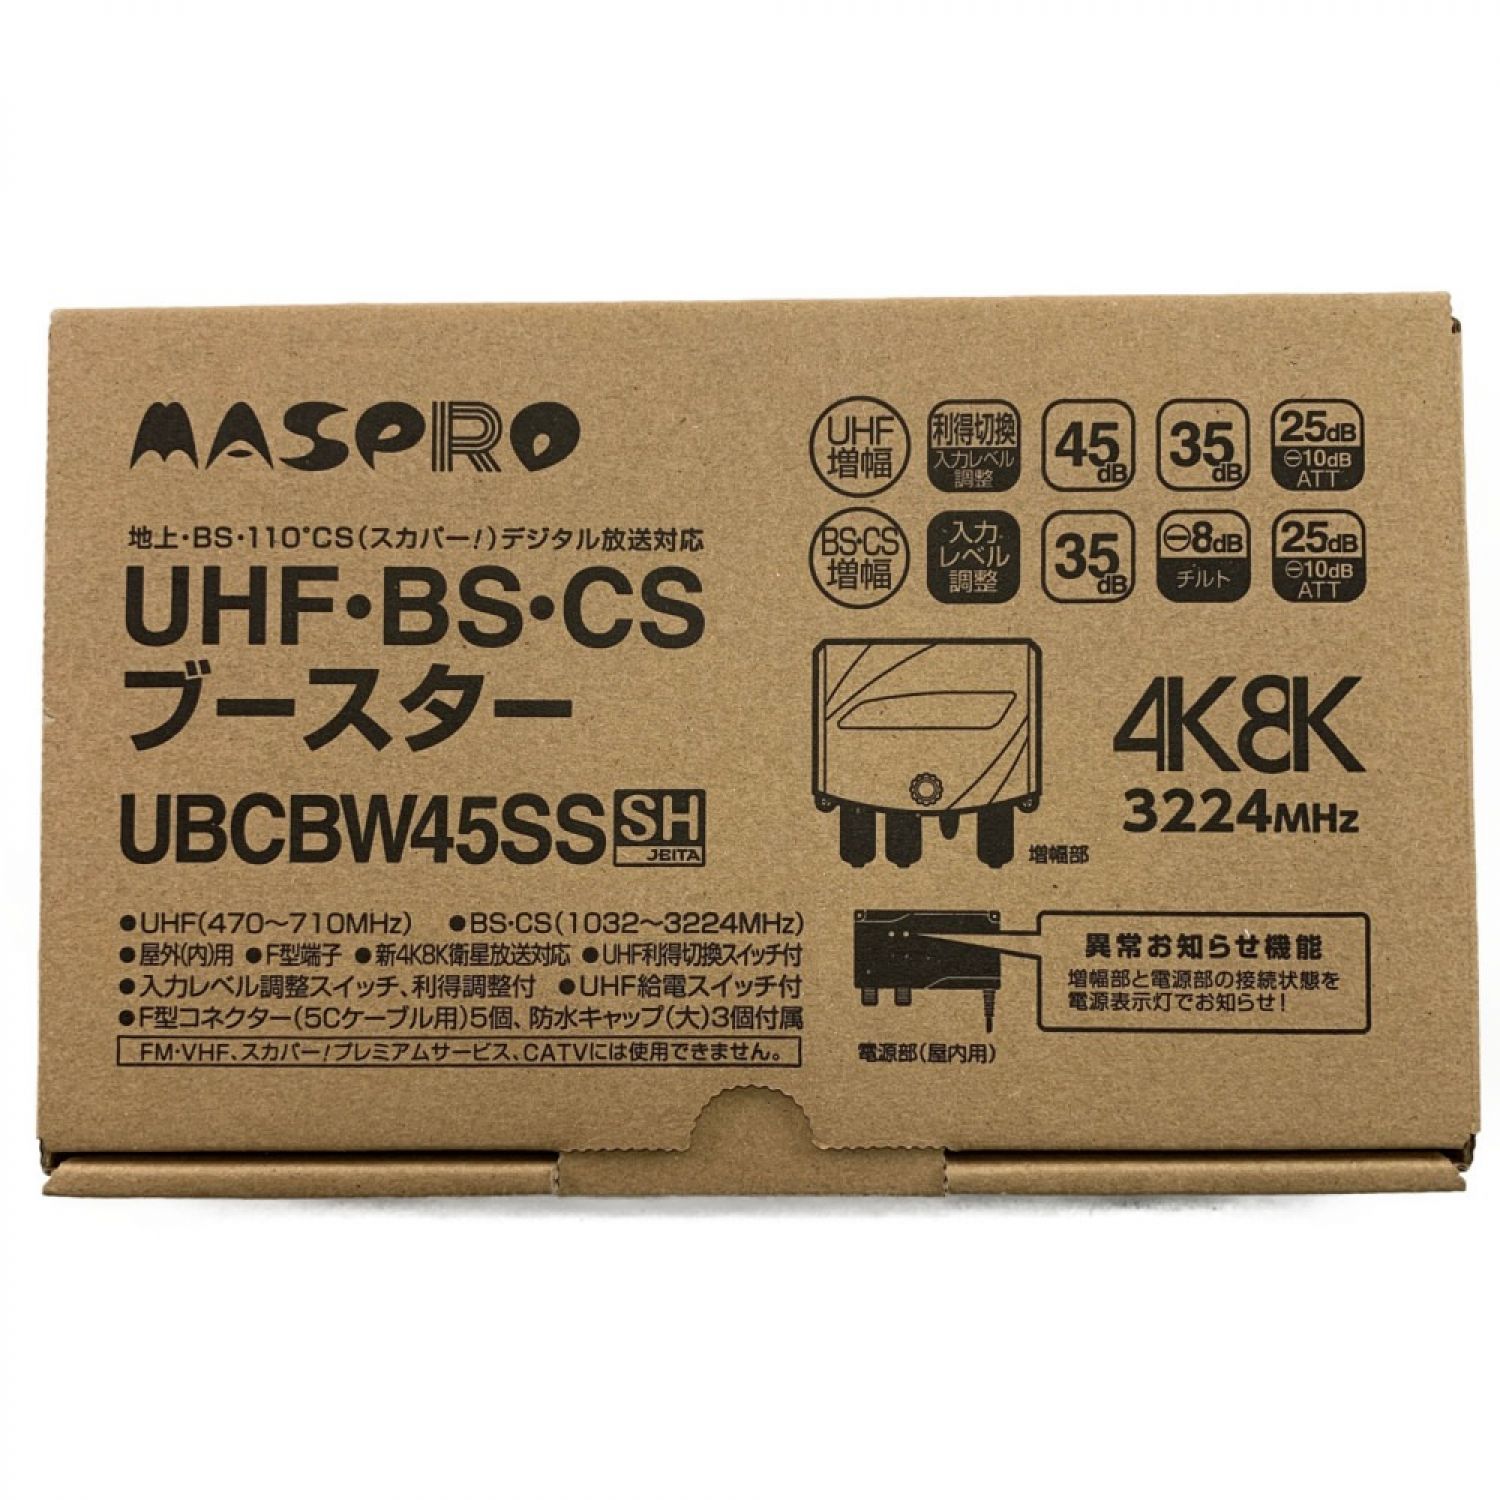 テレビ/映像機器 その他 ▽▽ MASPRO マスプロ UHF・BS・CSブースター UBCBW45SS 開封未使用品 Sランク